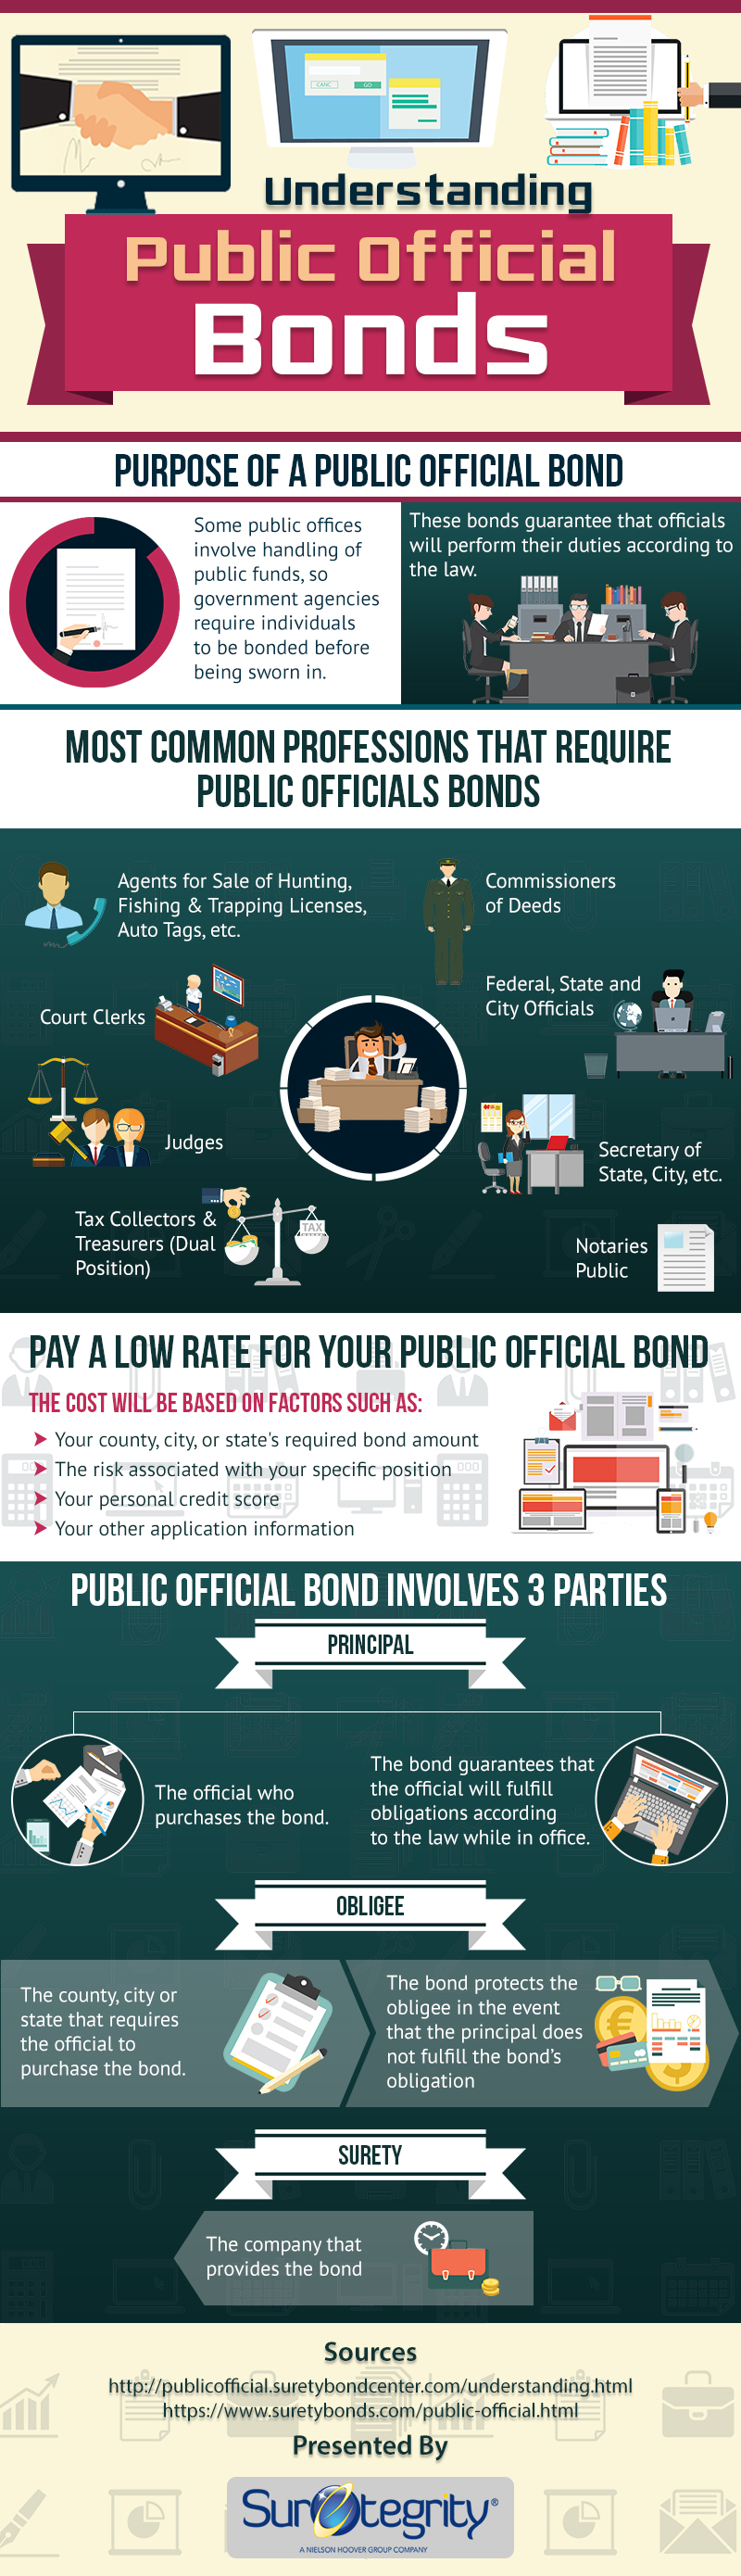 Public Official Bonds